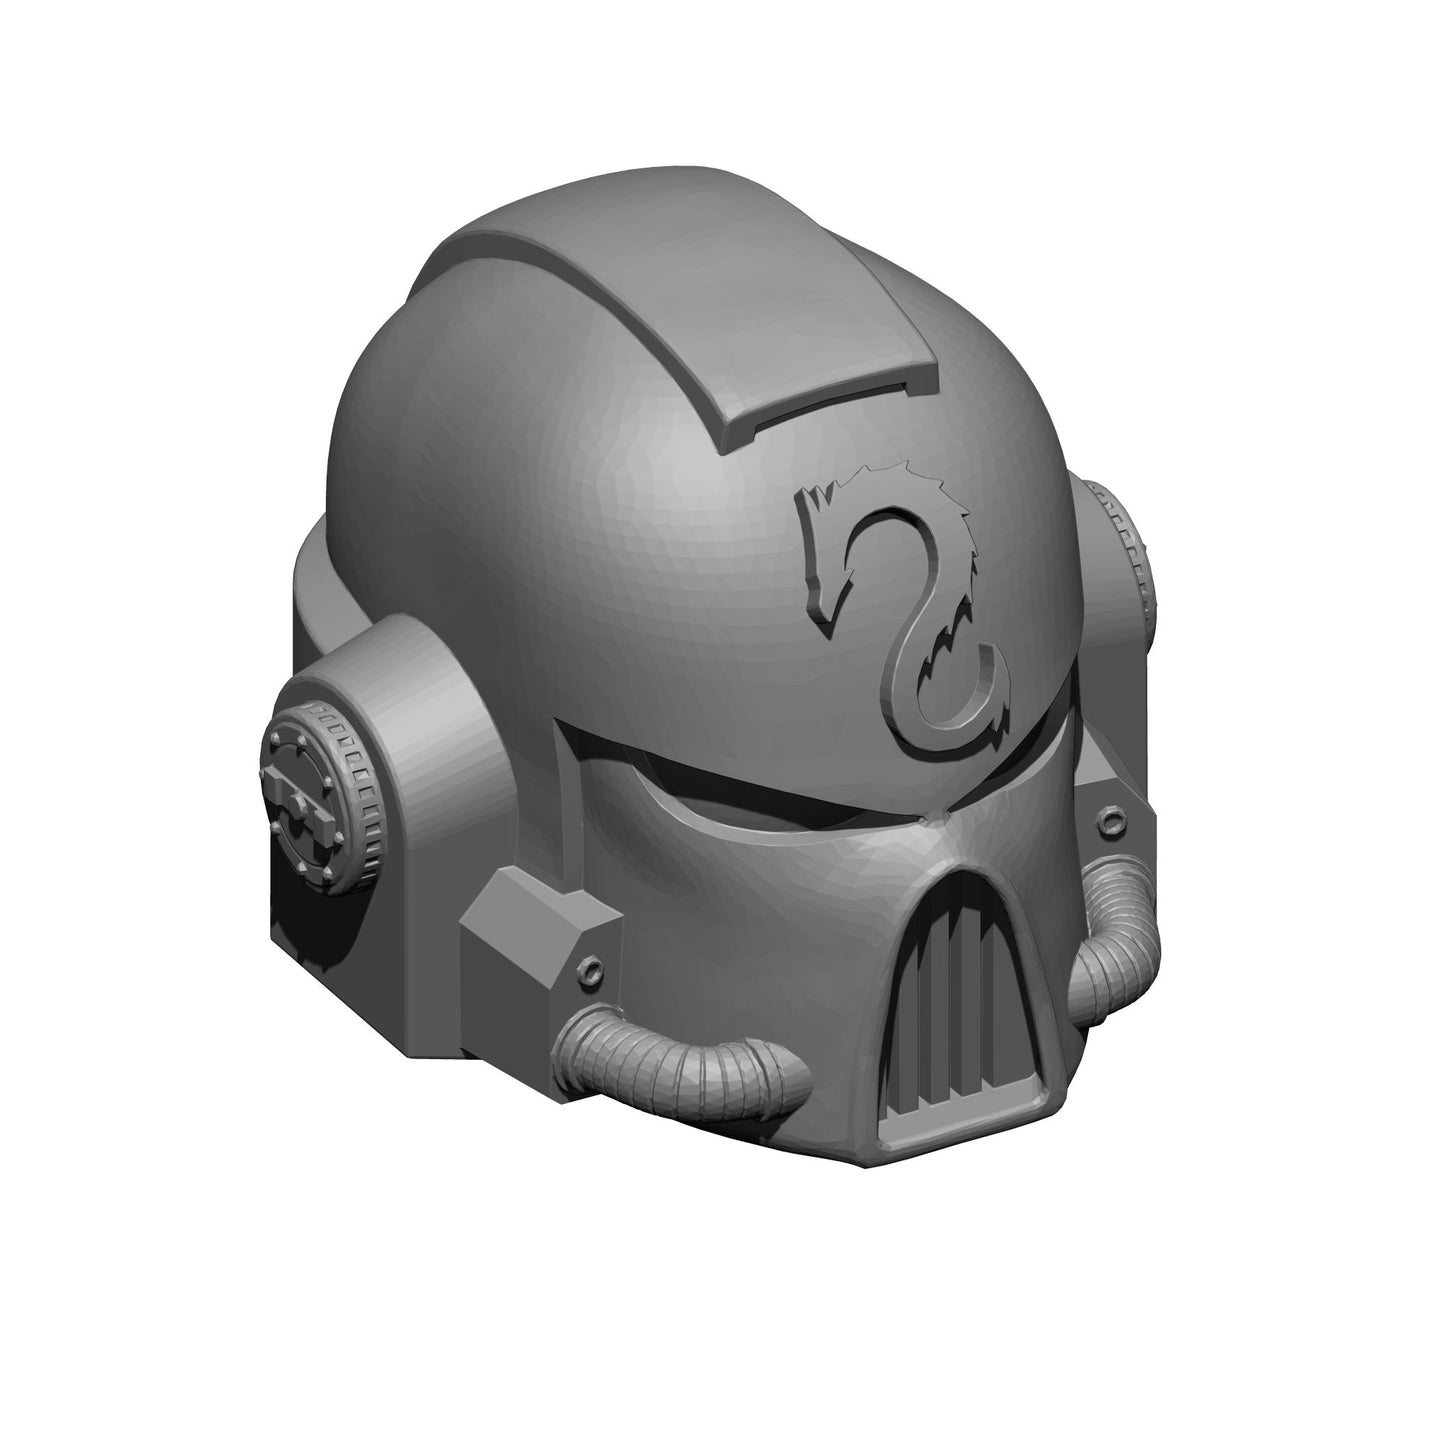 Emperor's Dragons Chapter Mark VII Helmet: Gen: 7 Helmet for JoyToy Warhammer 40K Compatible Space Marine 1:18 4" Action Figures